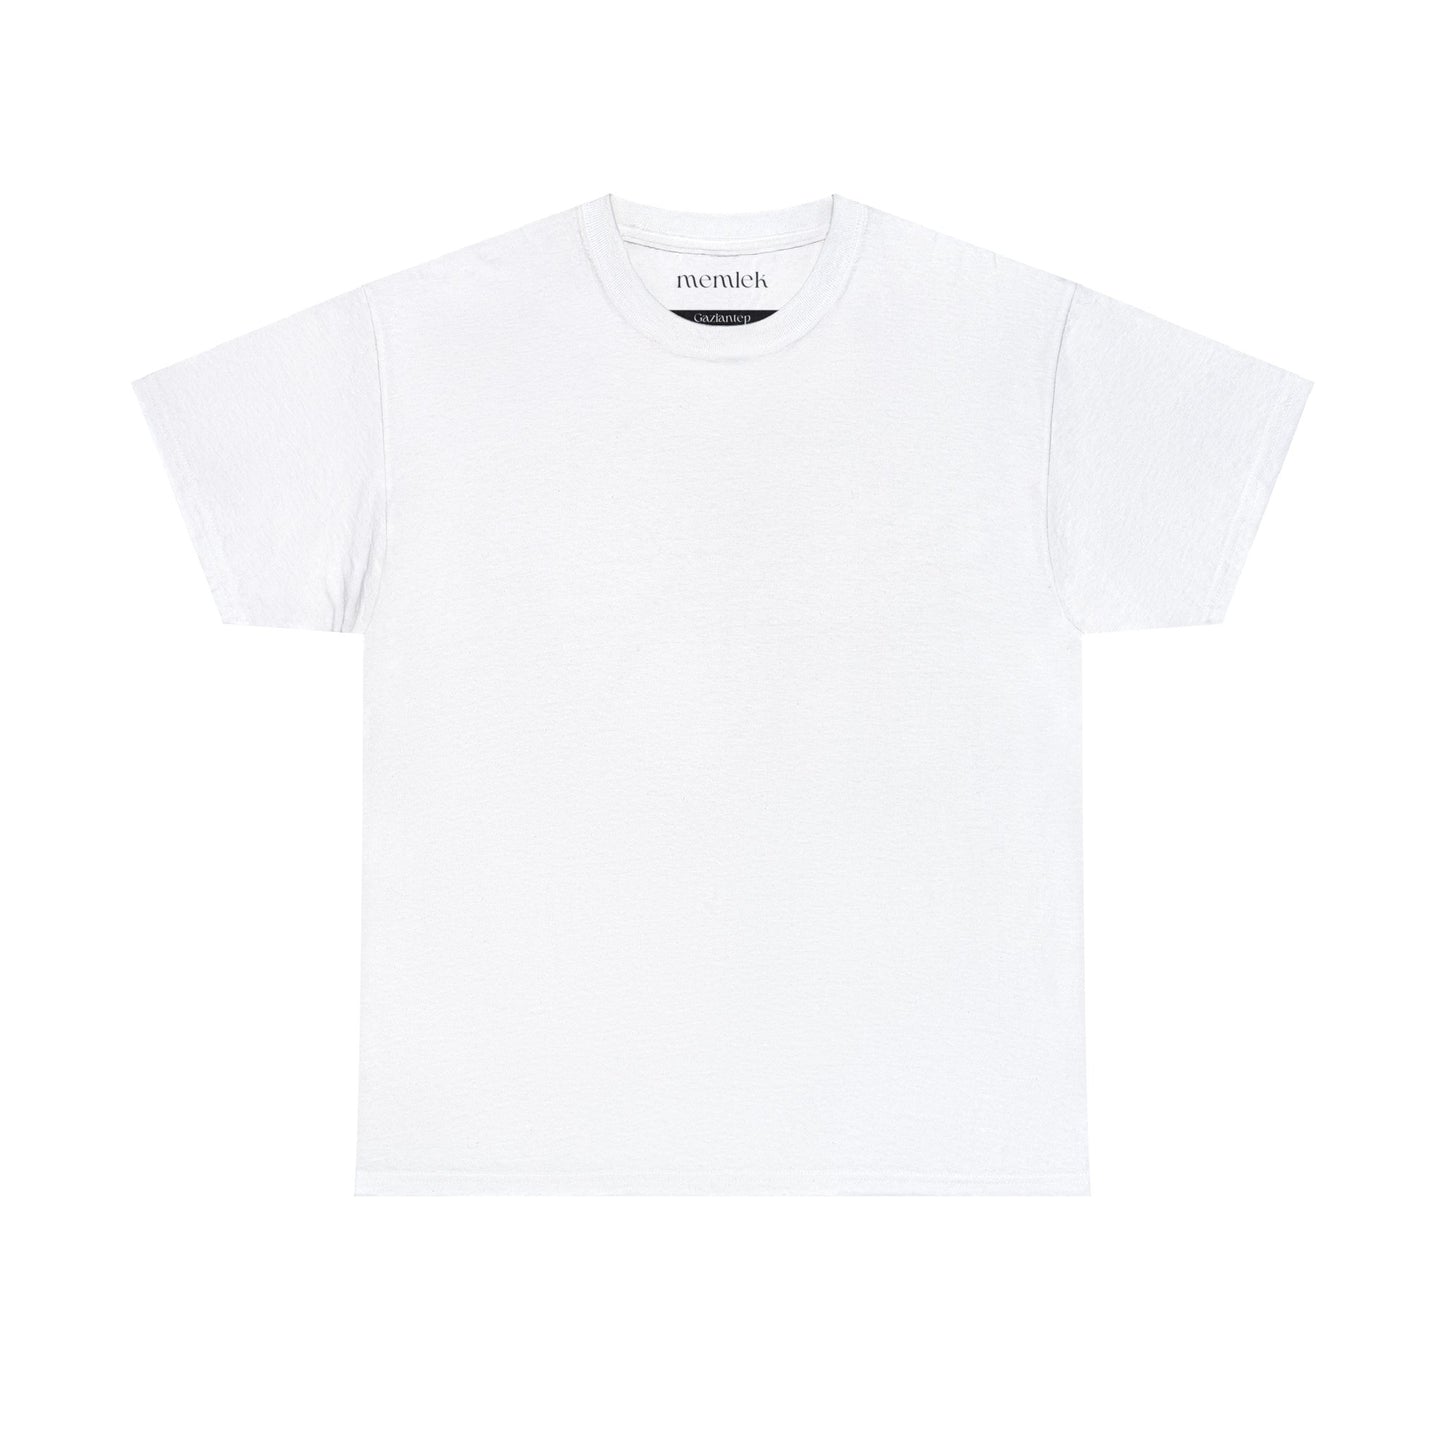 Siyah Lale - 27 Gaziantep - T-Shirt - Back Print - Black/White